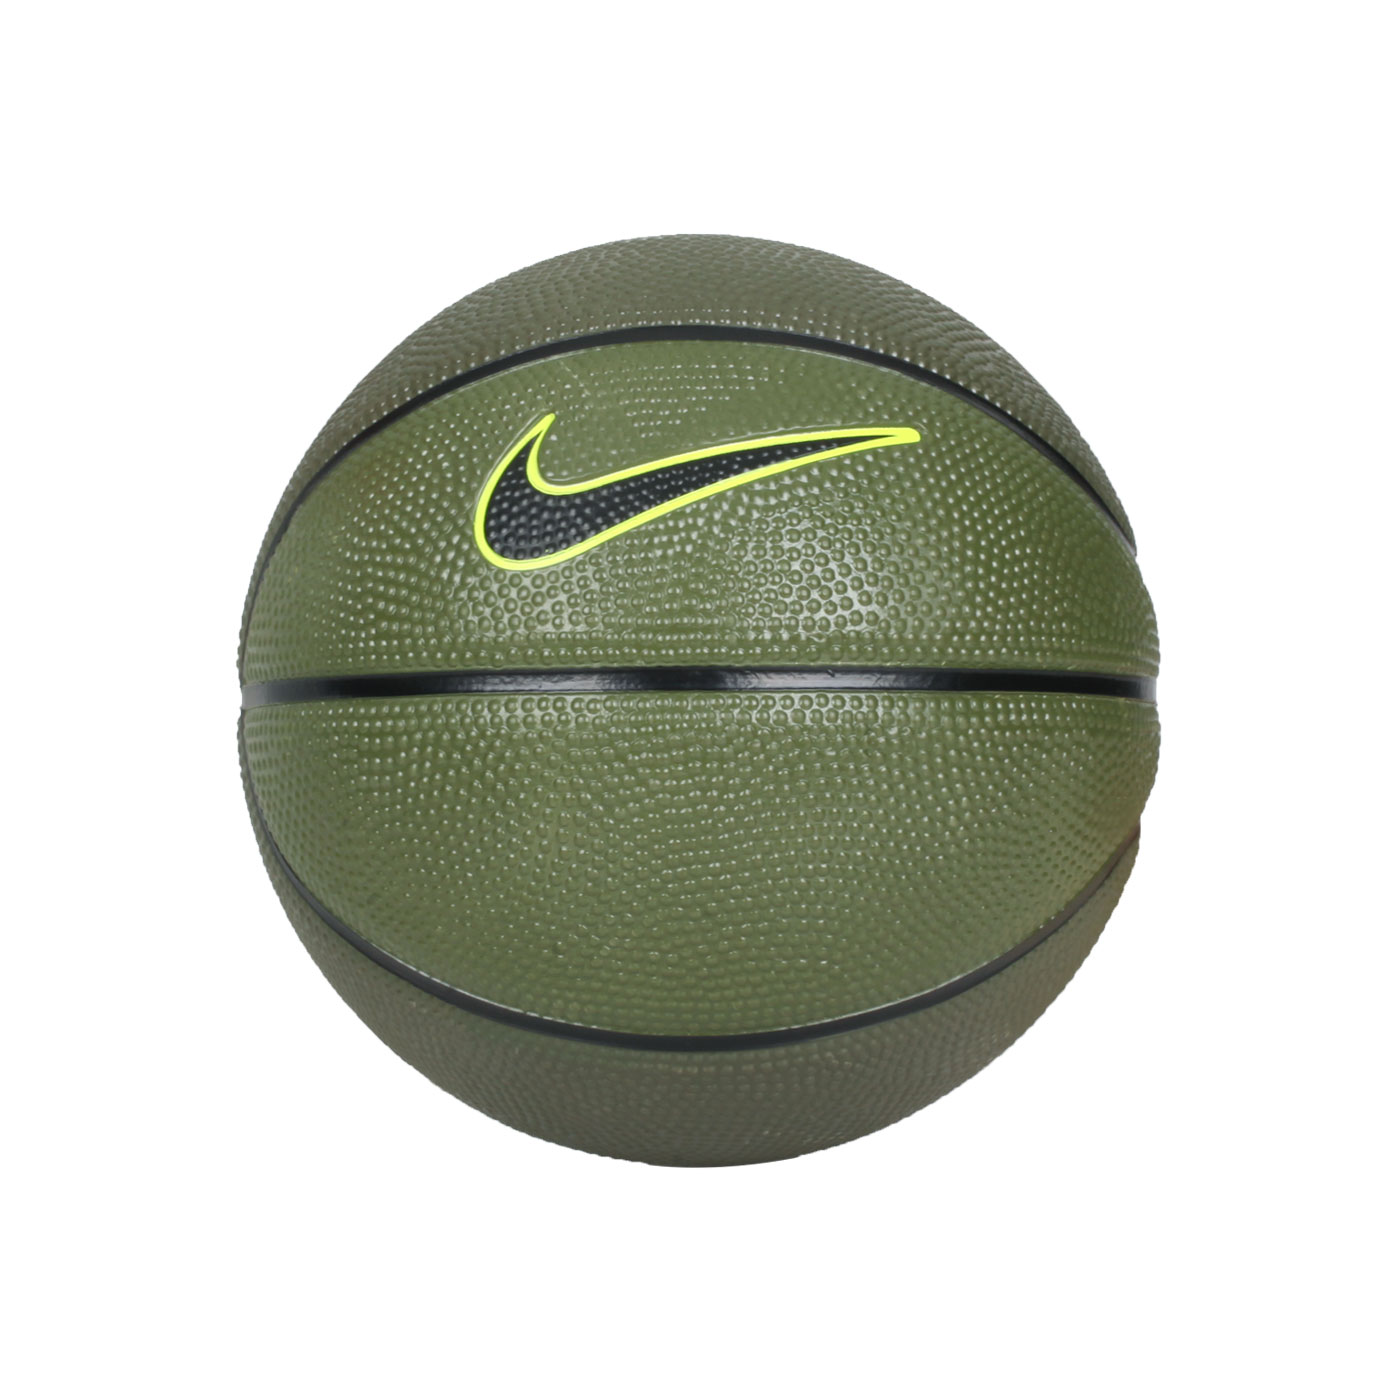 NIKE SKILLS 3號籃球 N000128520403 - 軍綠黑螢黃